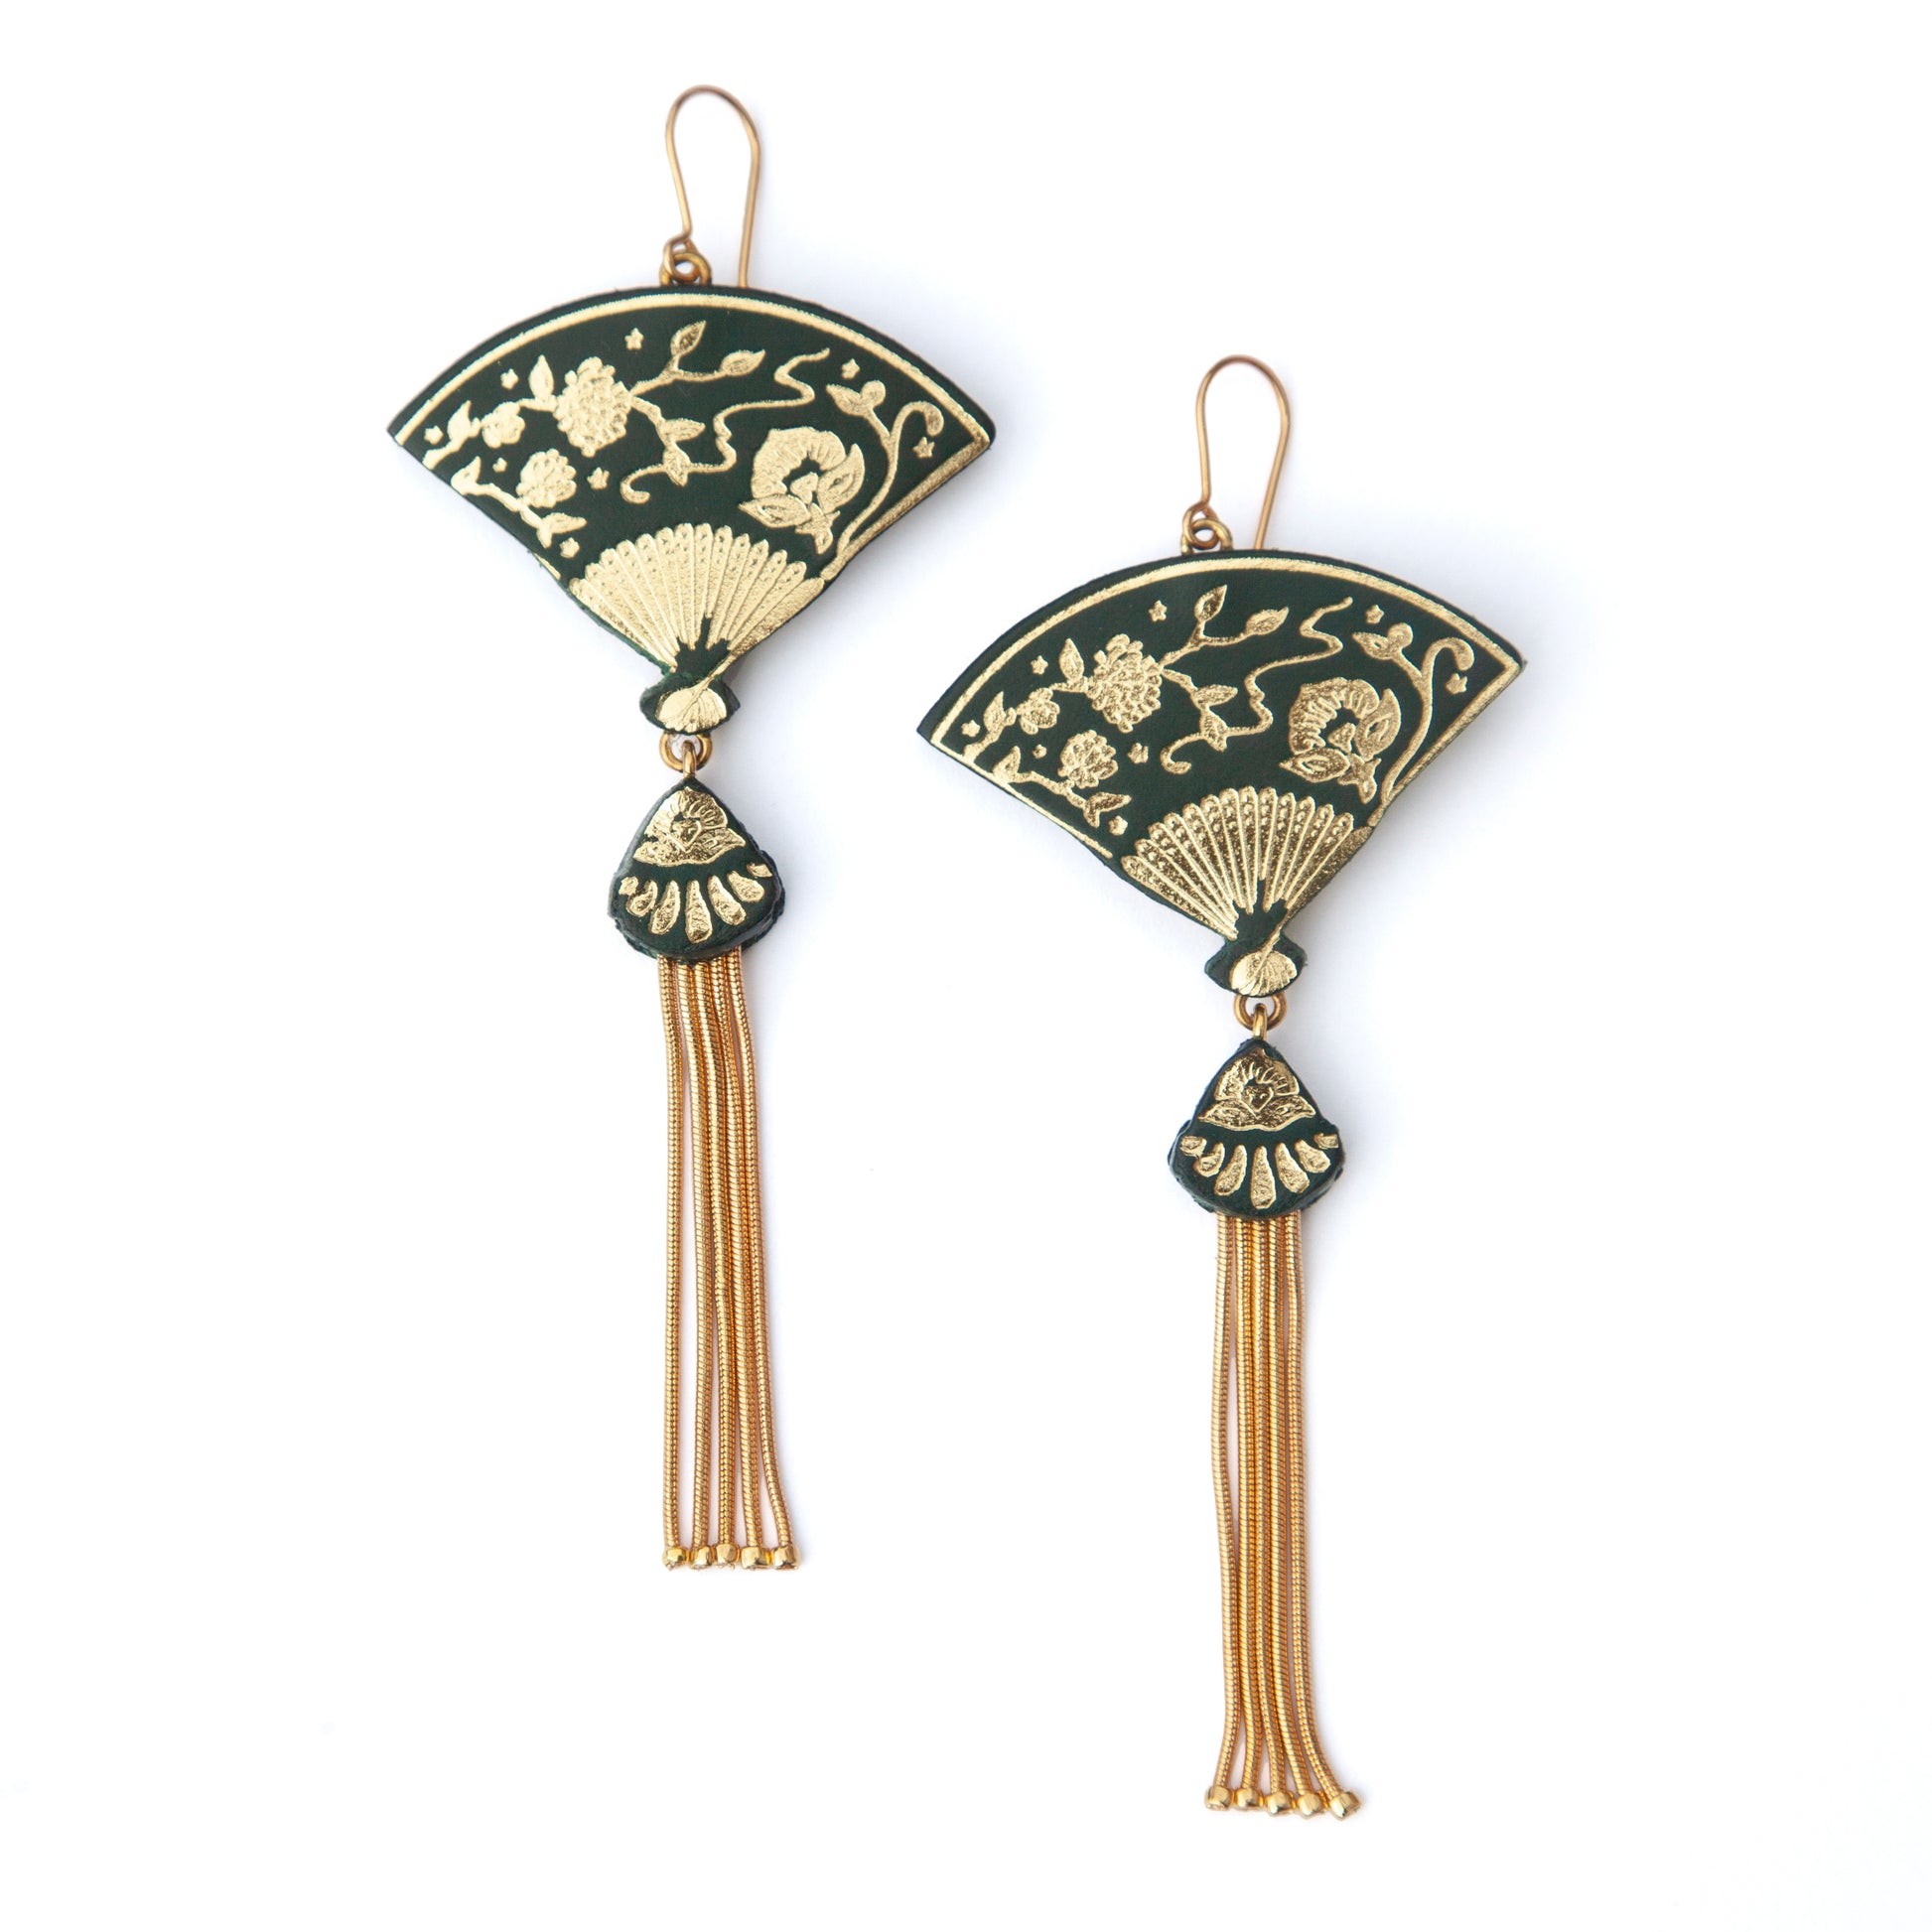 tasselled fan earrings in dark forest green & gold